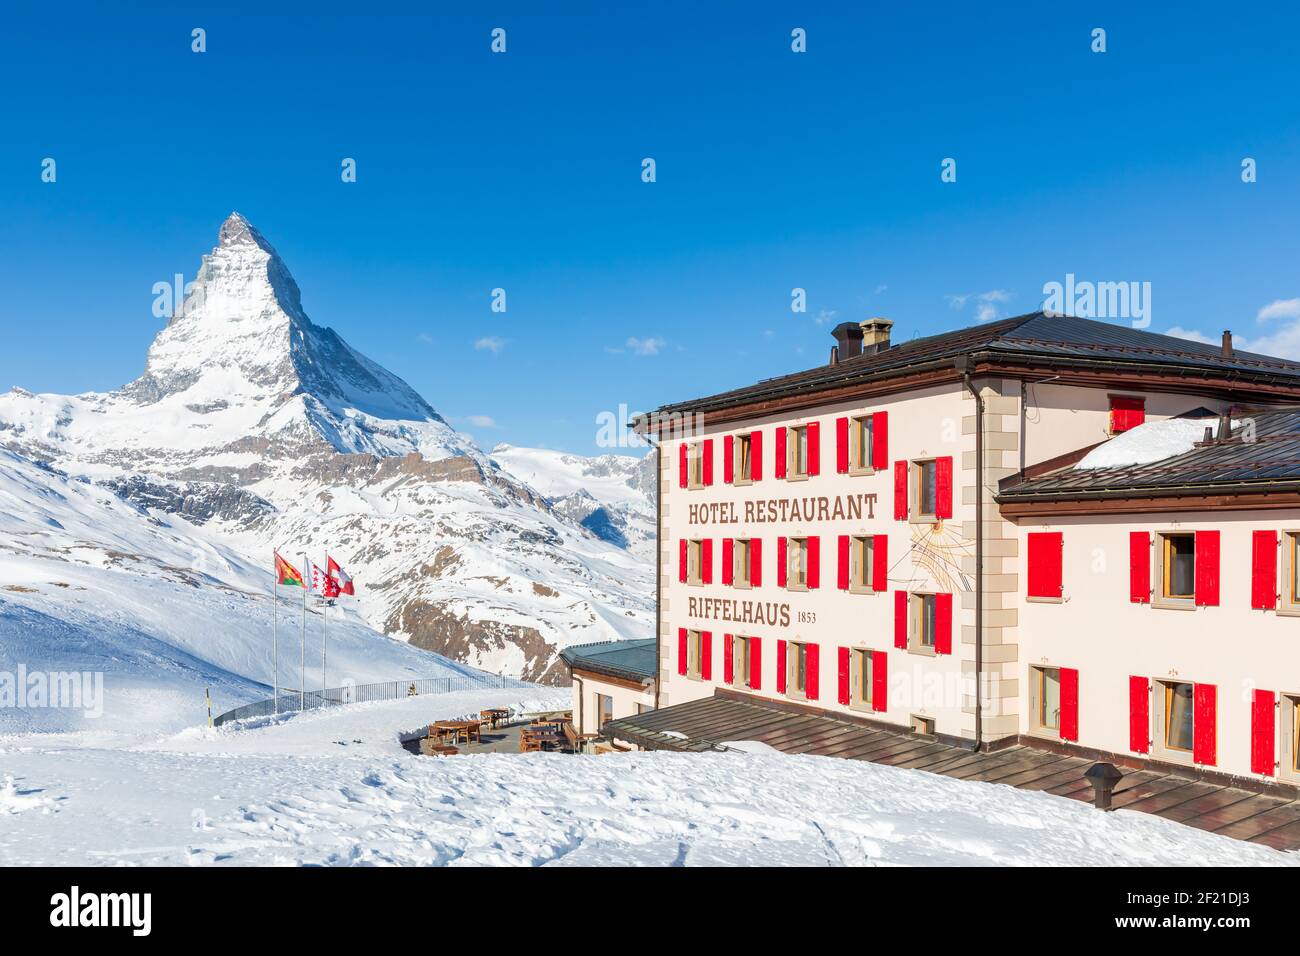 Hôtel et restaurant Riffelhaus, Matterhorn, Zermatt, Valais, Suisse Banque D'Images